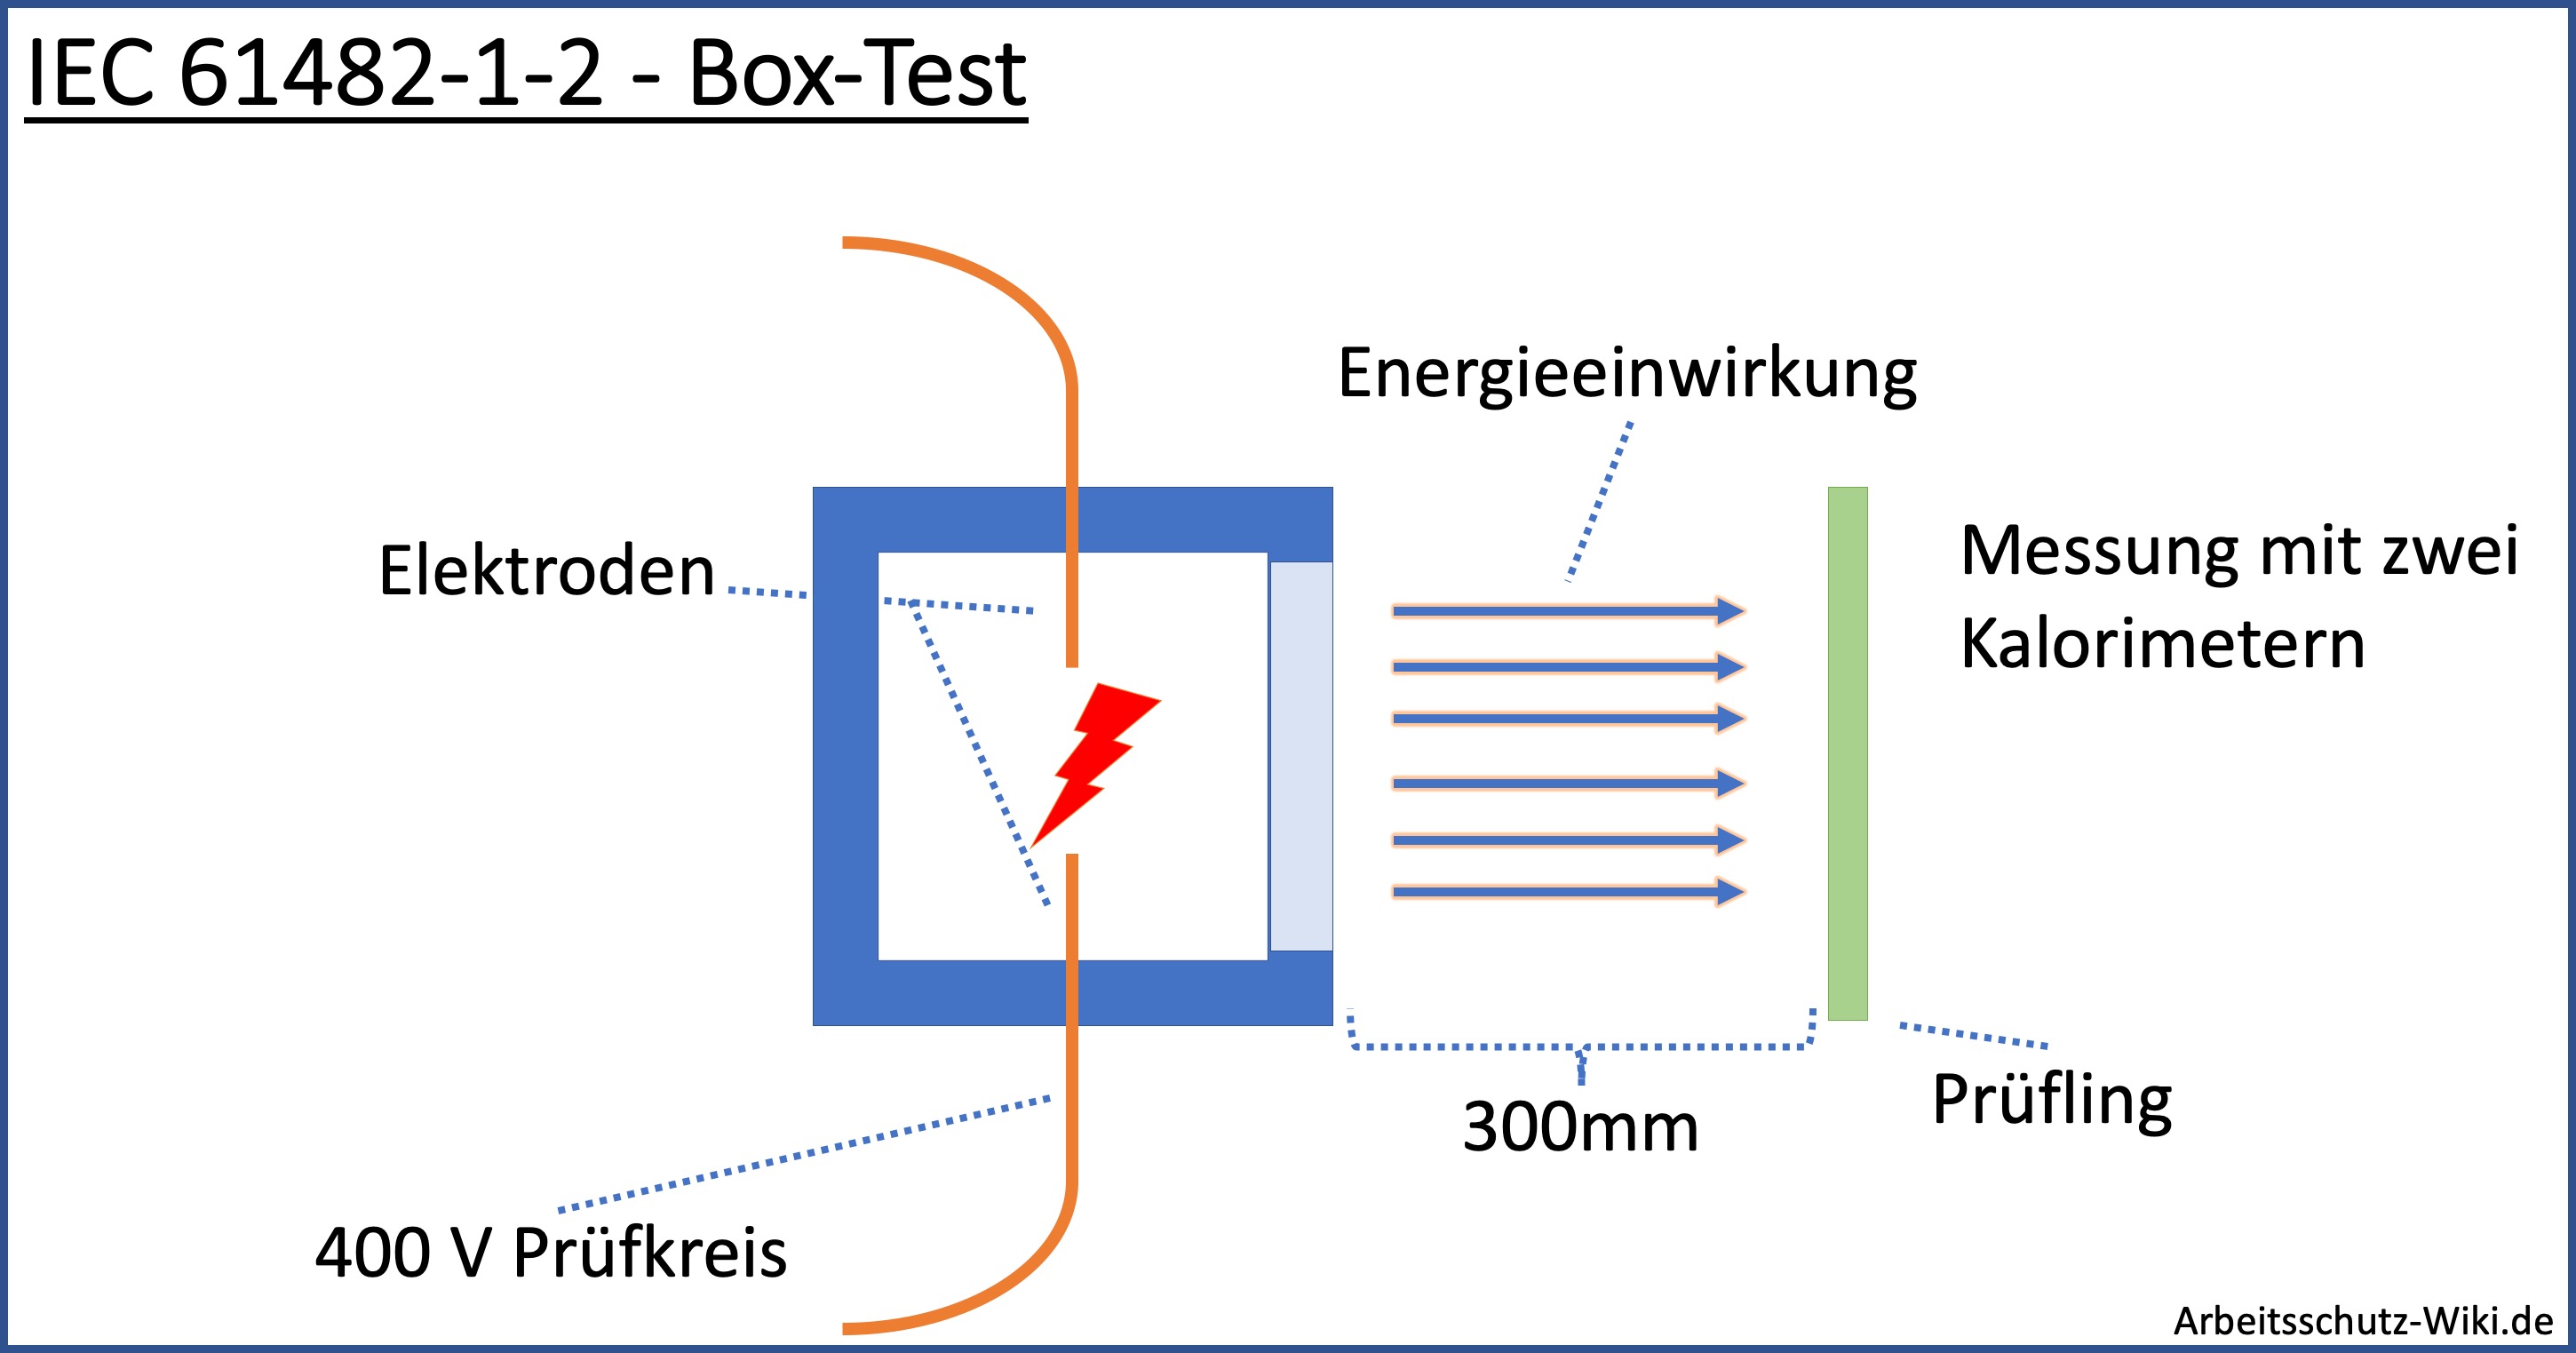 Datei:IEC 61482-1-2 Box Test.jpg